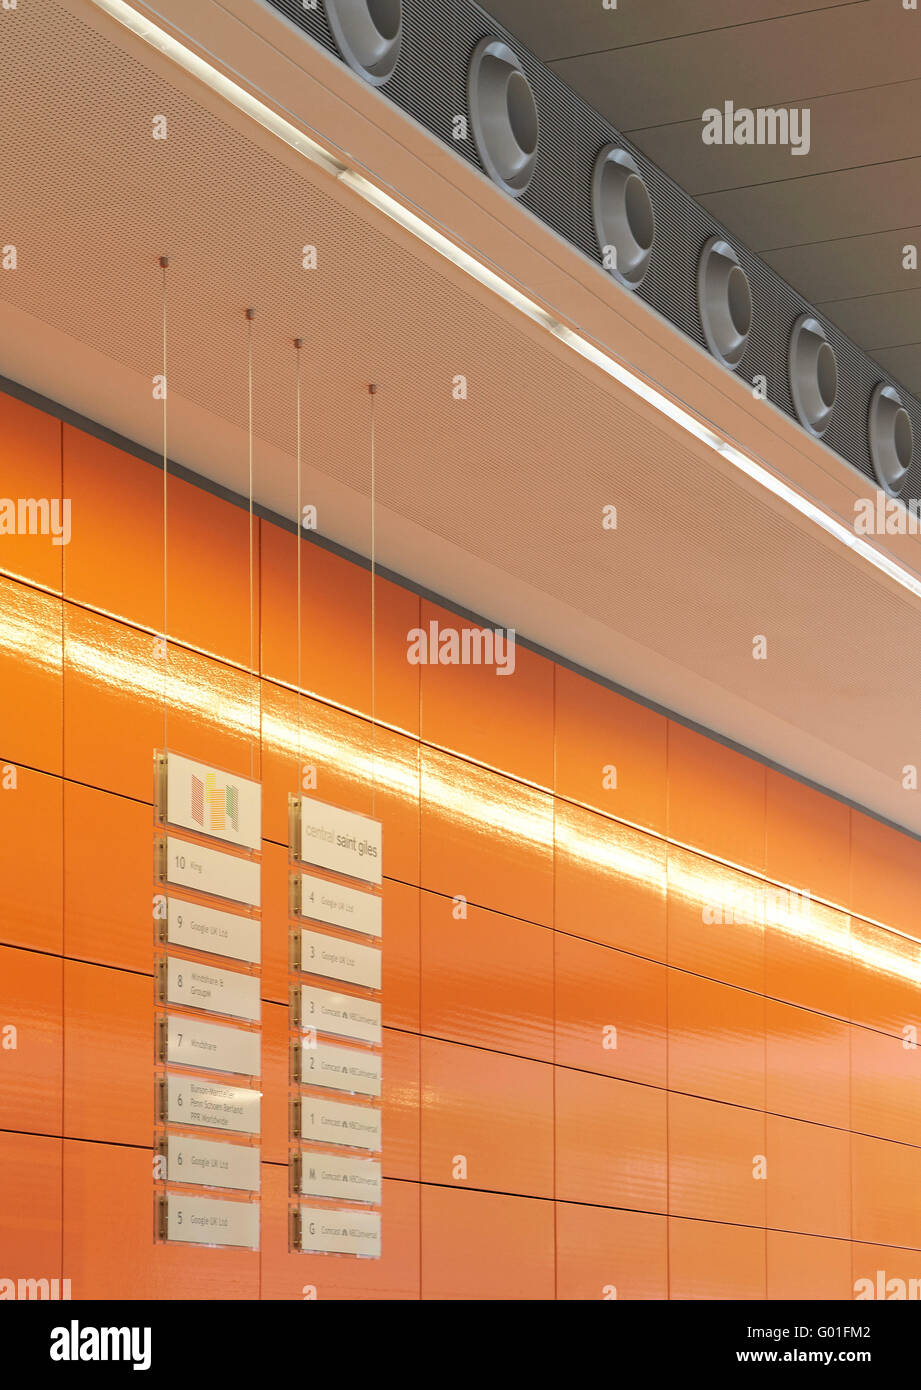 Detail der legendären orange farbigen Keramikfliesen. Central Saint Giles, London, Vereinigtes Königreich. Architekt: Renzo Piano Building Workshop, 2015. Stockfoto